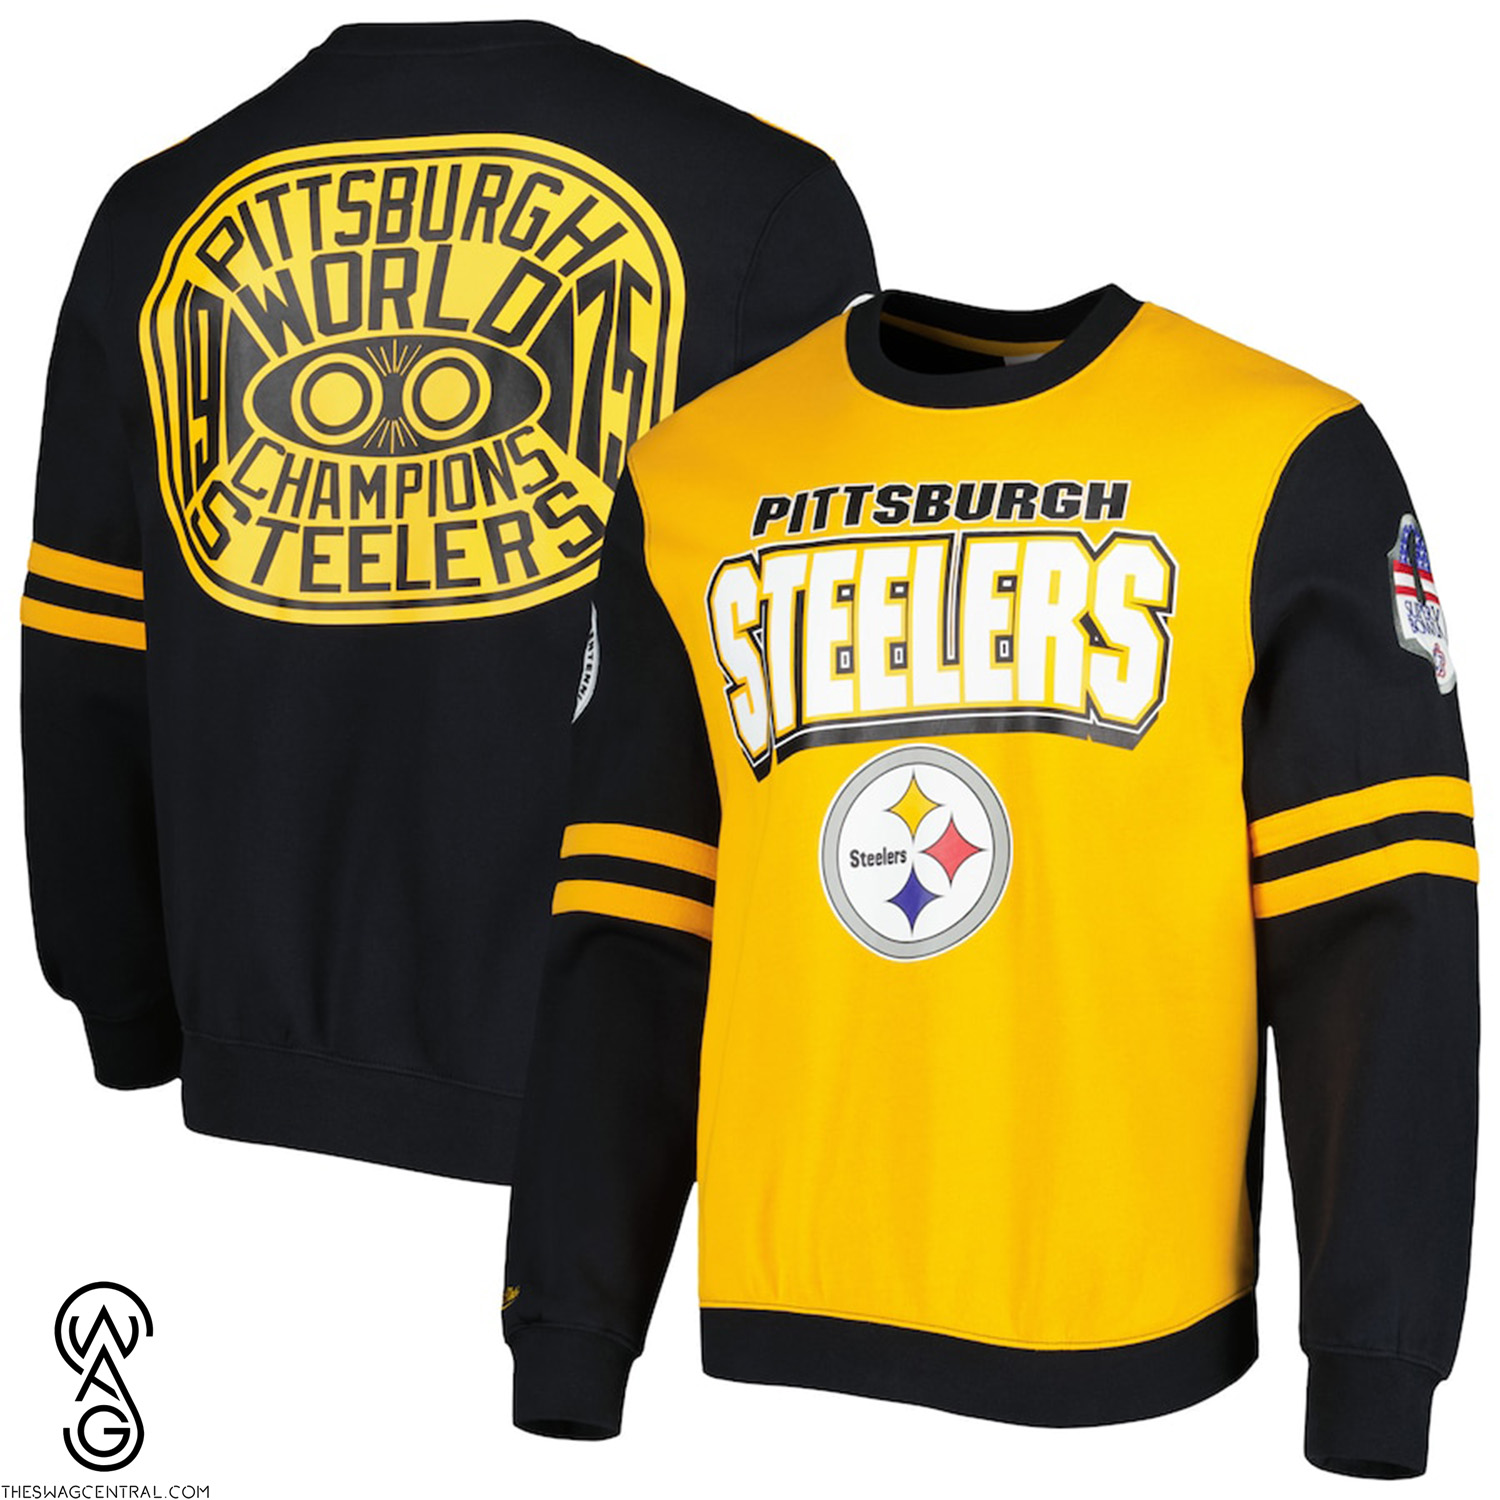 NFL Pittsburgh Steelers Pullover Sweatshirt